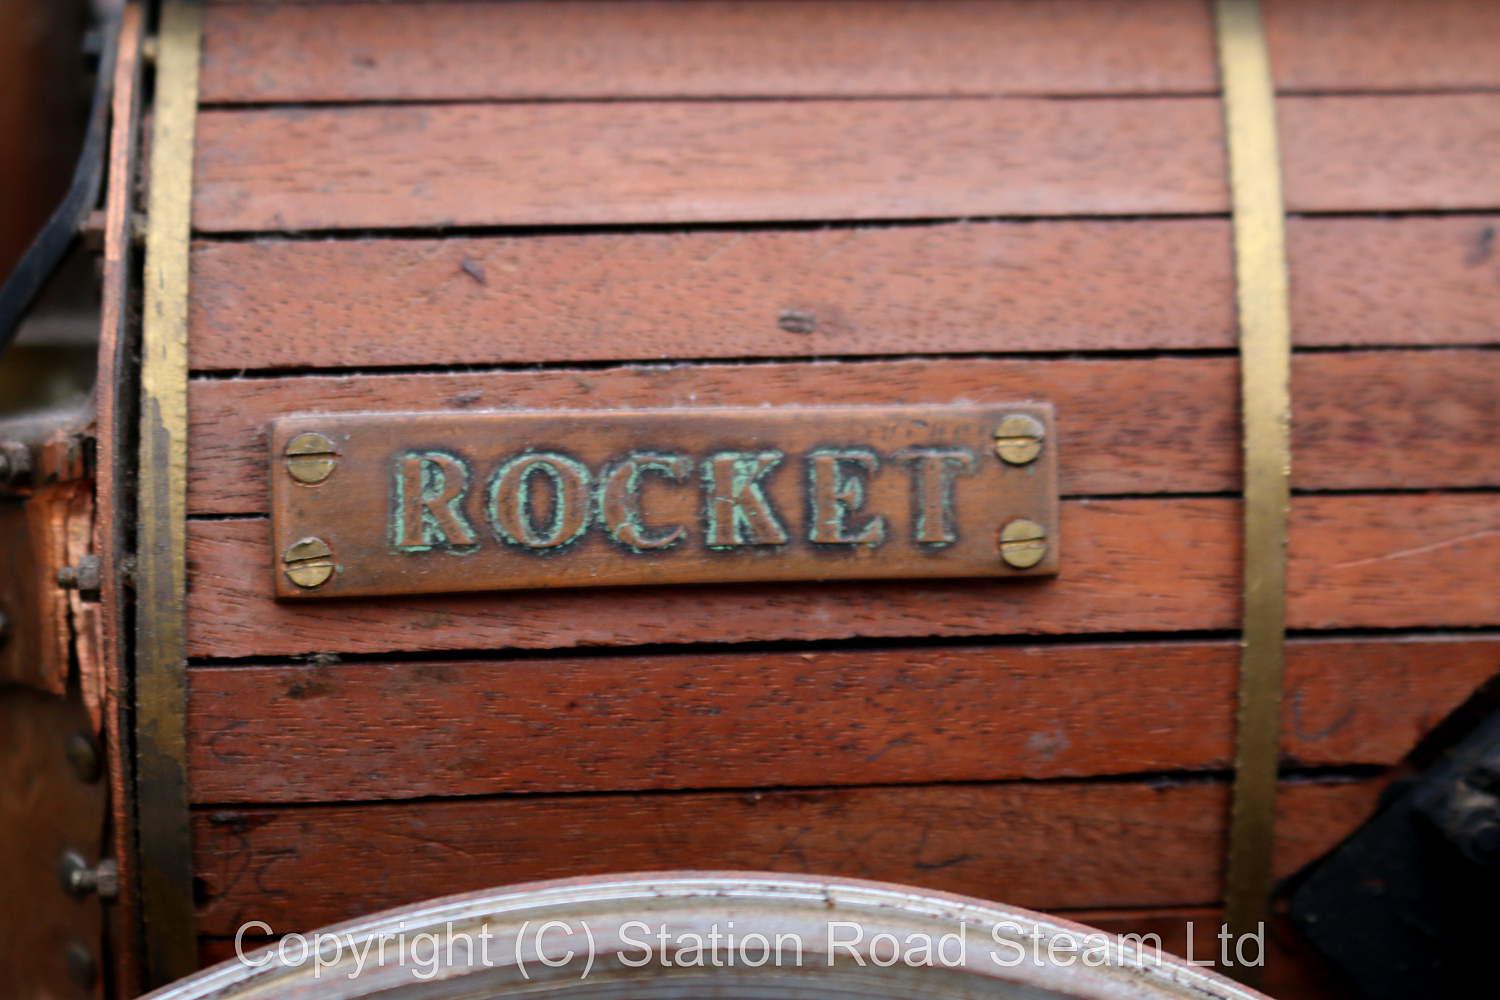 7 1/4 inch gauge display model Stephenson's "Rocket"